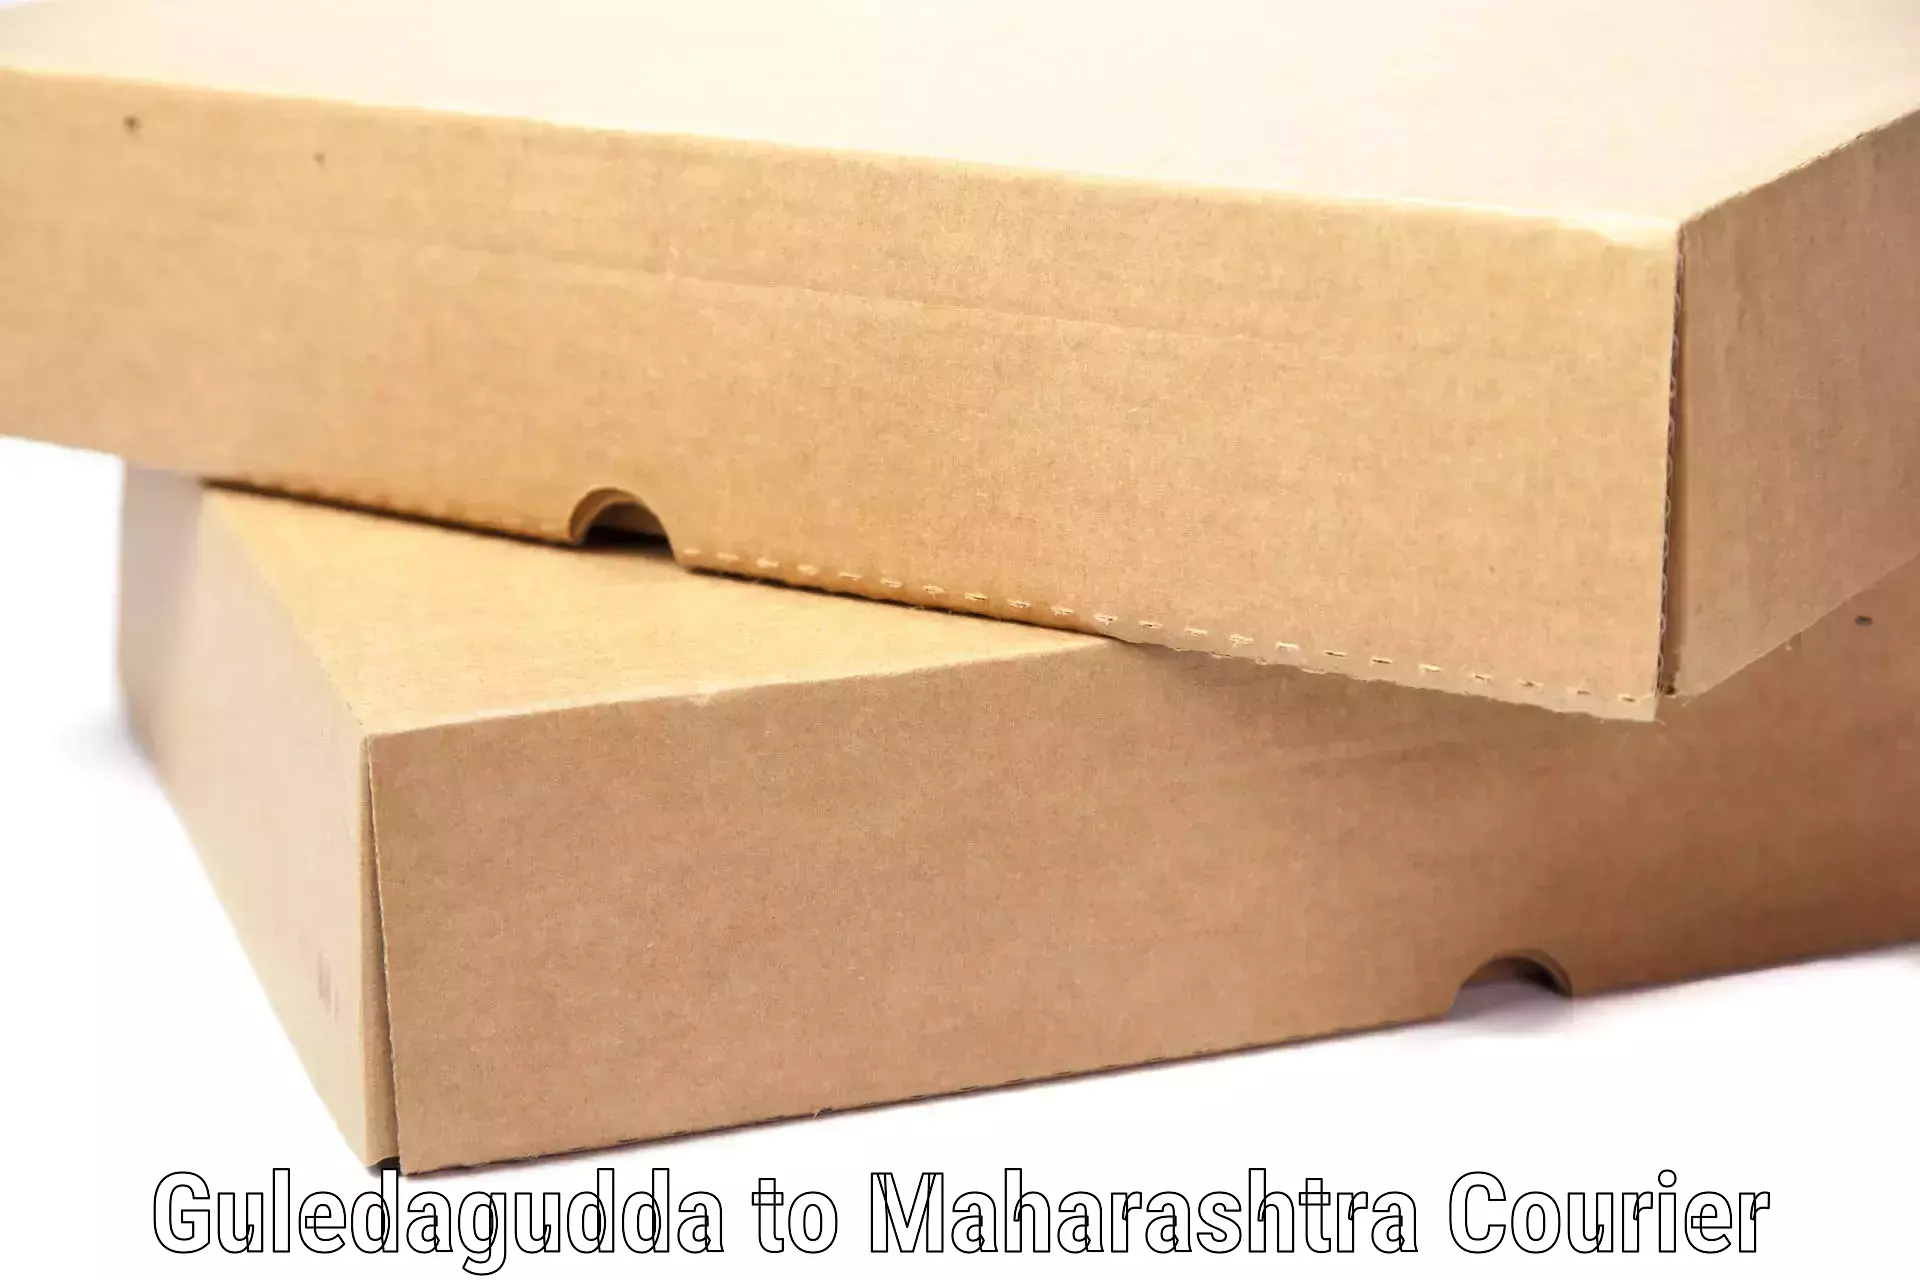 Luggage shipment tracking Guledagudda to Maharashtra